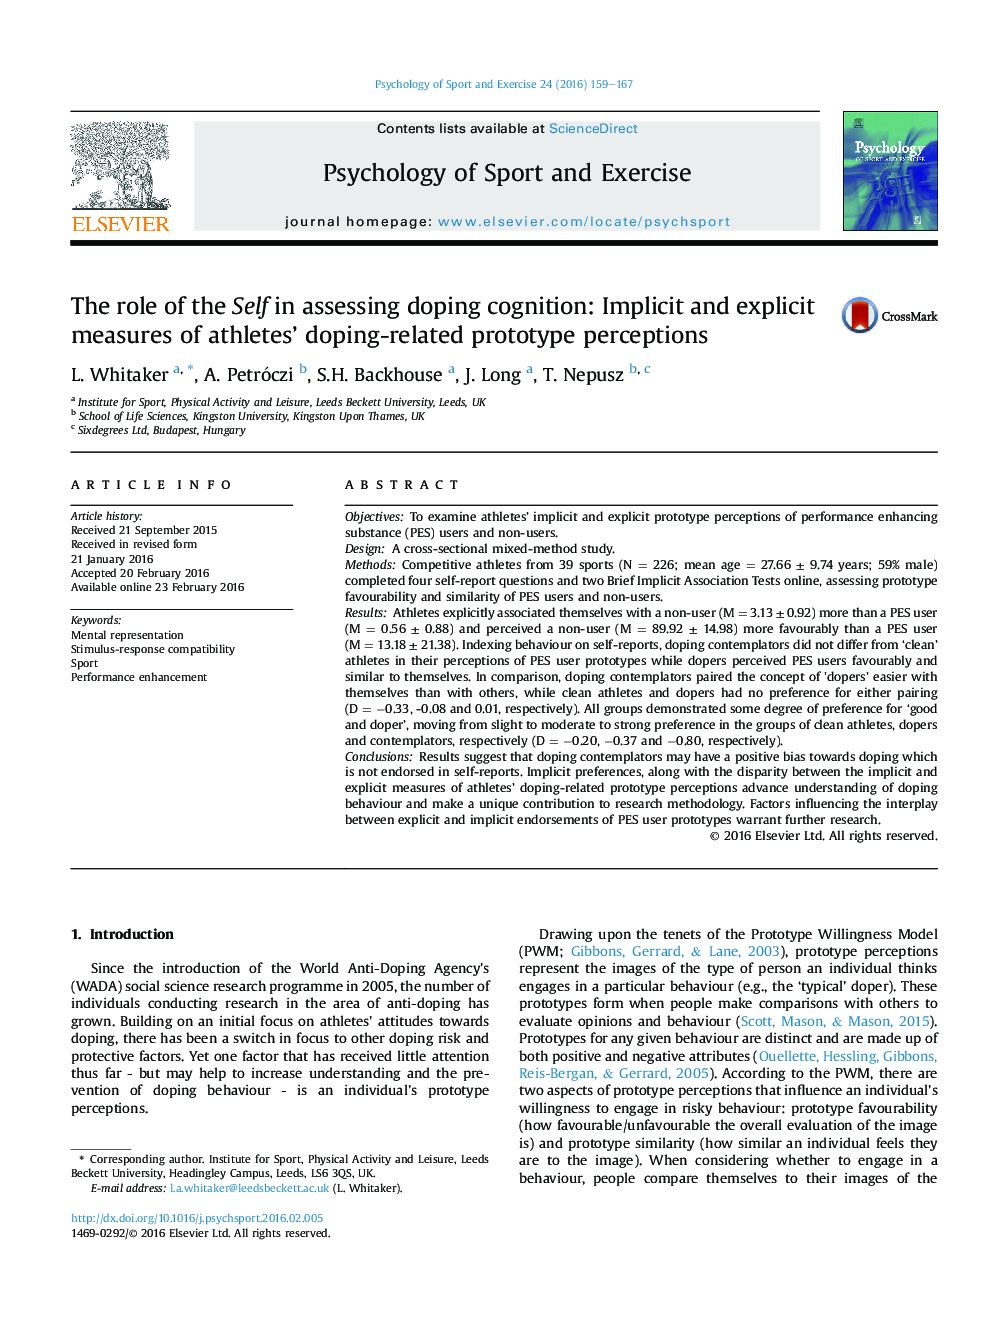 نقش خود در ارزیابی شناخت دوپینگ: اندازه گیری های منفی و صریح ادراکات نمونه اولیه مربوط به دوپینگ ورزشکاران 